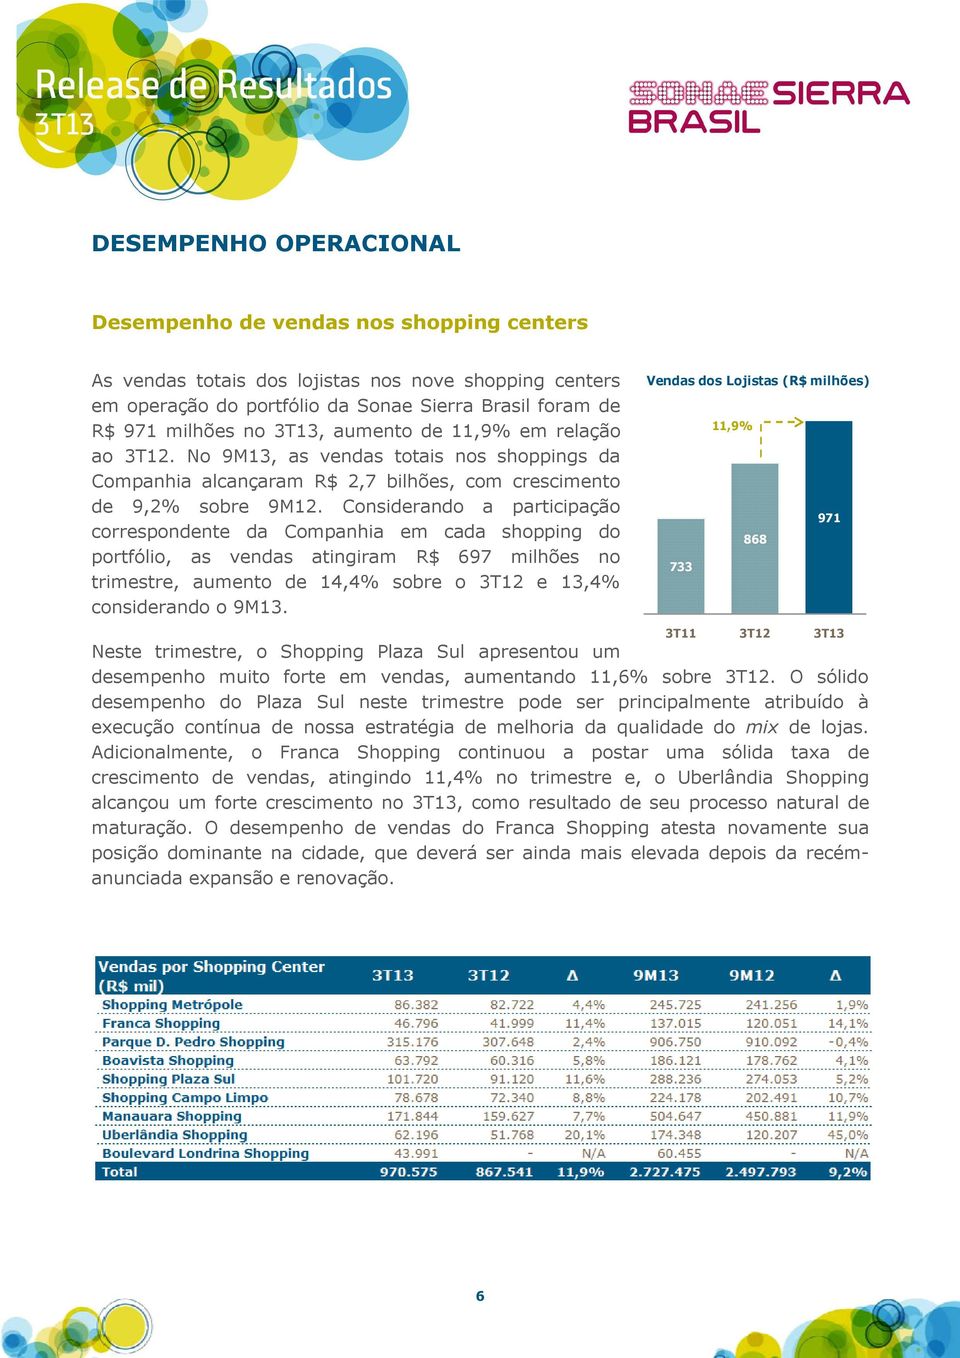 Considerando a participação correspondente da Companhia em cada shopping do portfólio, as vendas atingiram R$ 697 milhões no trimestre, aumento de 14,4% sobre o 3T12 e 13,4% considerando o 9M13.